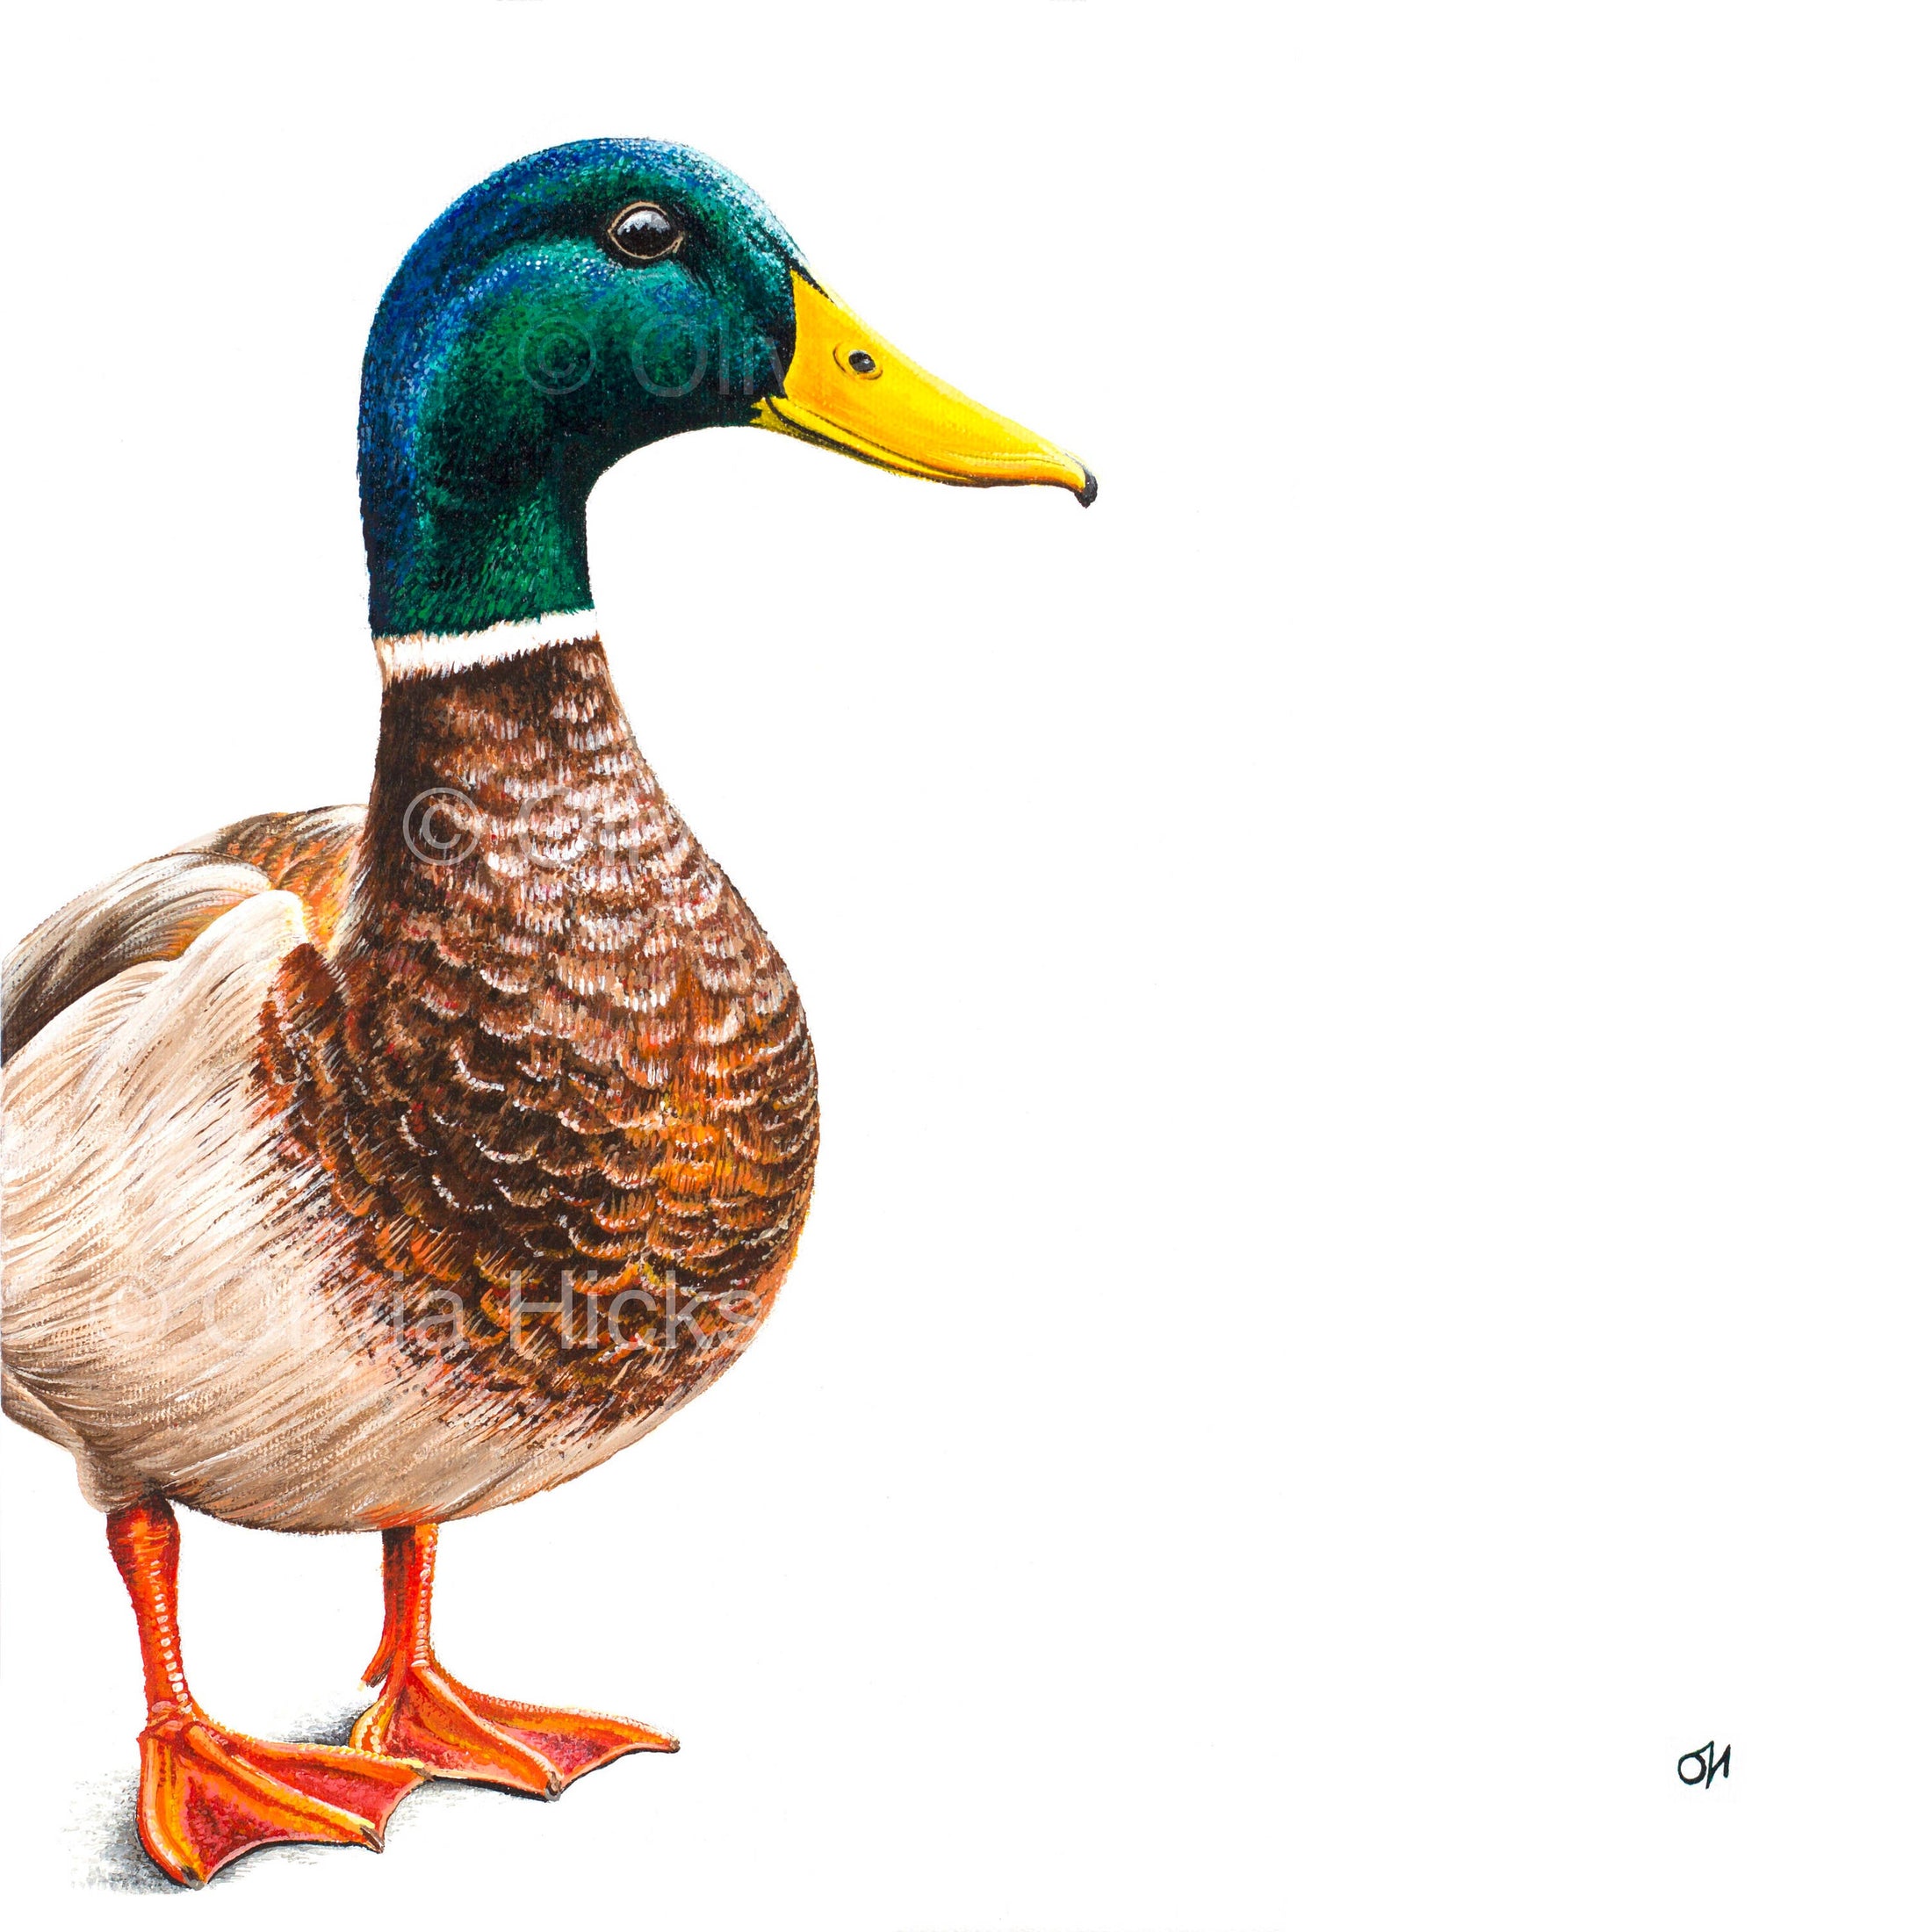 Mallard duck fine art giclée print